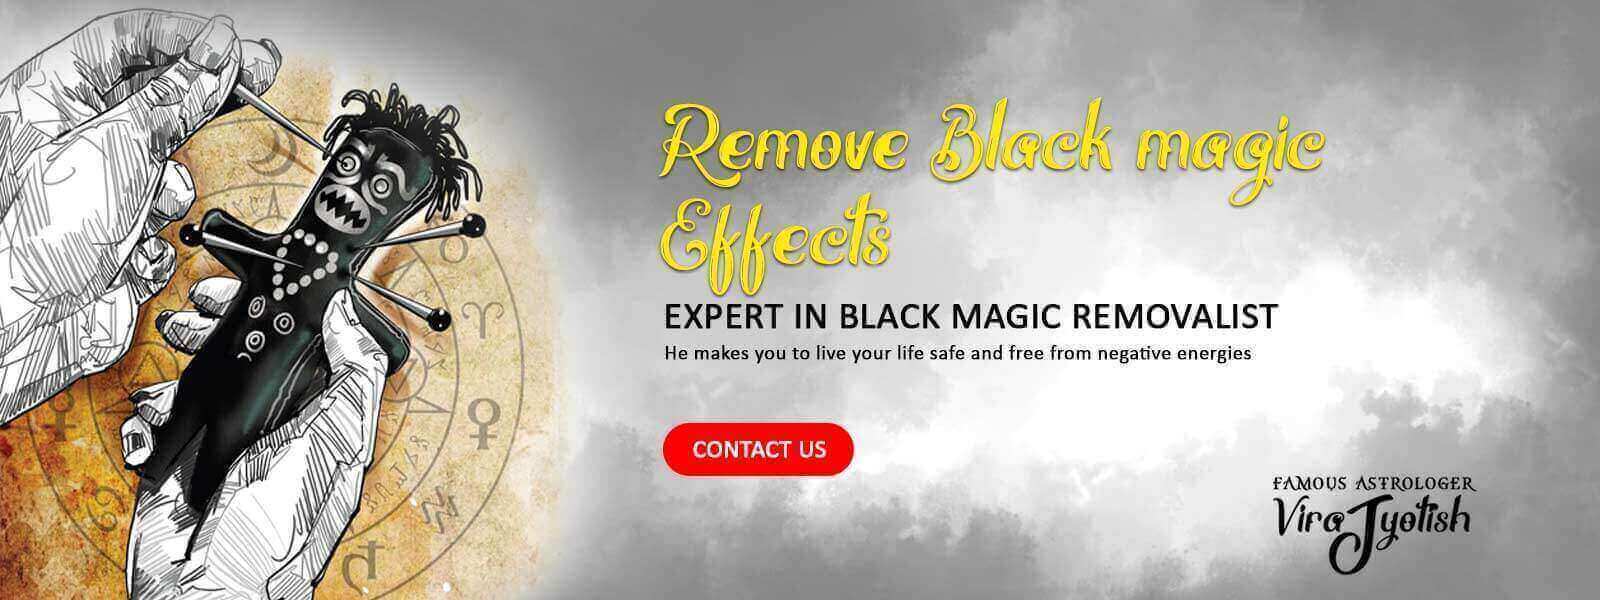 Black Magic Specialist